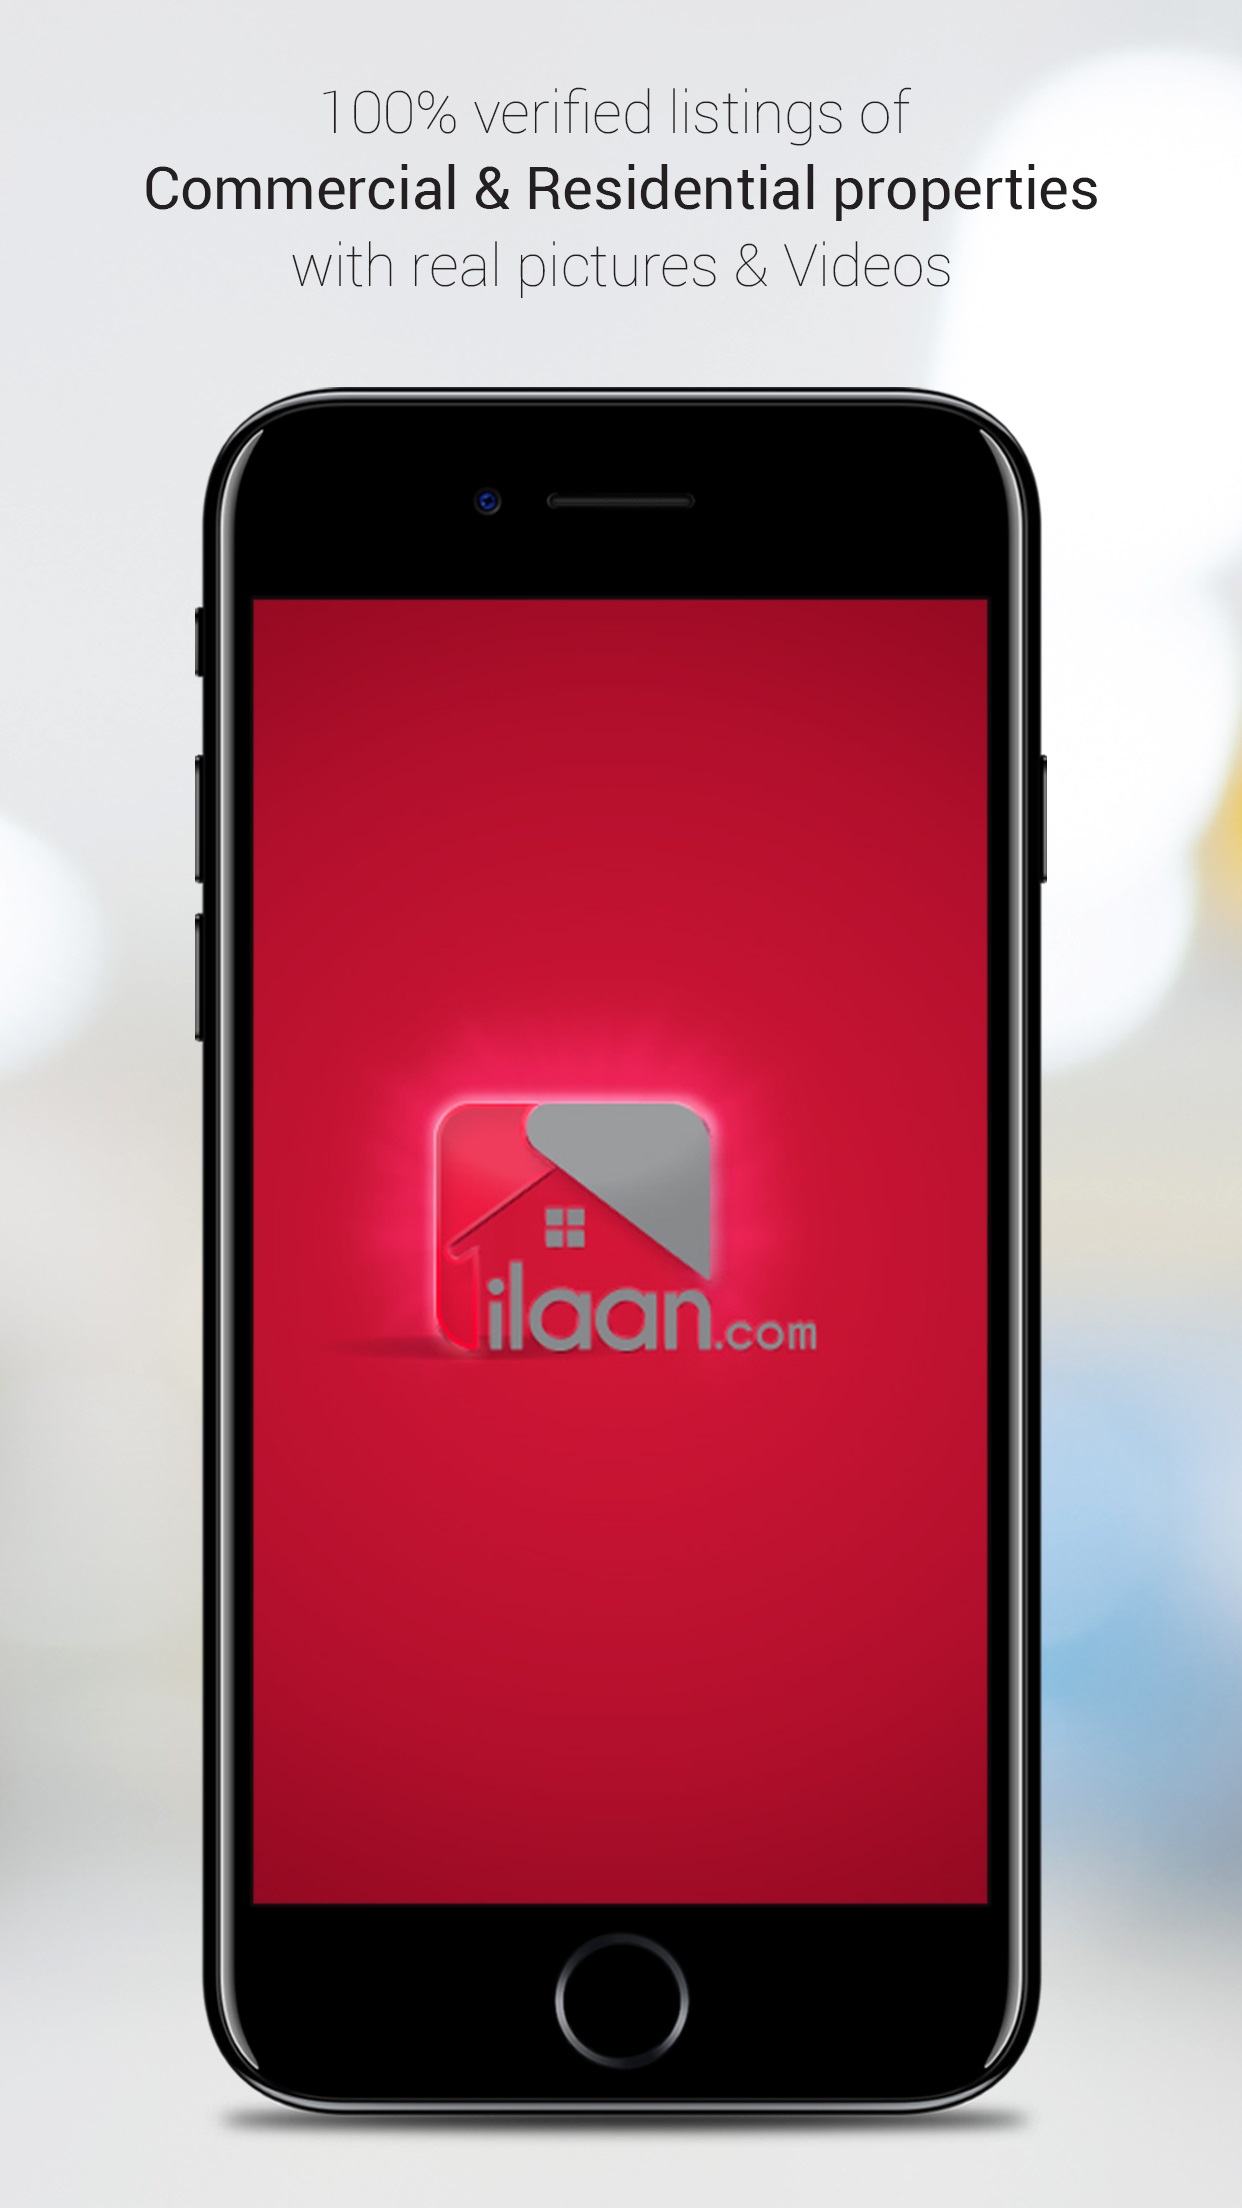 ilaan.com - Premium Property Portal